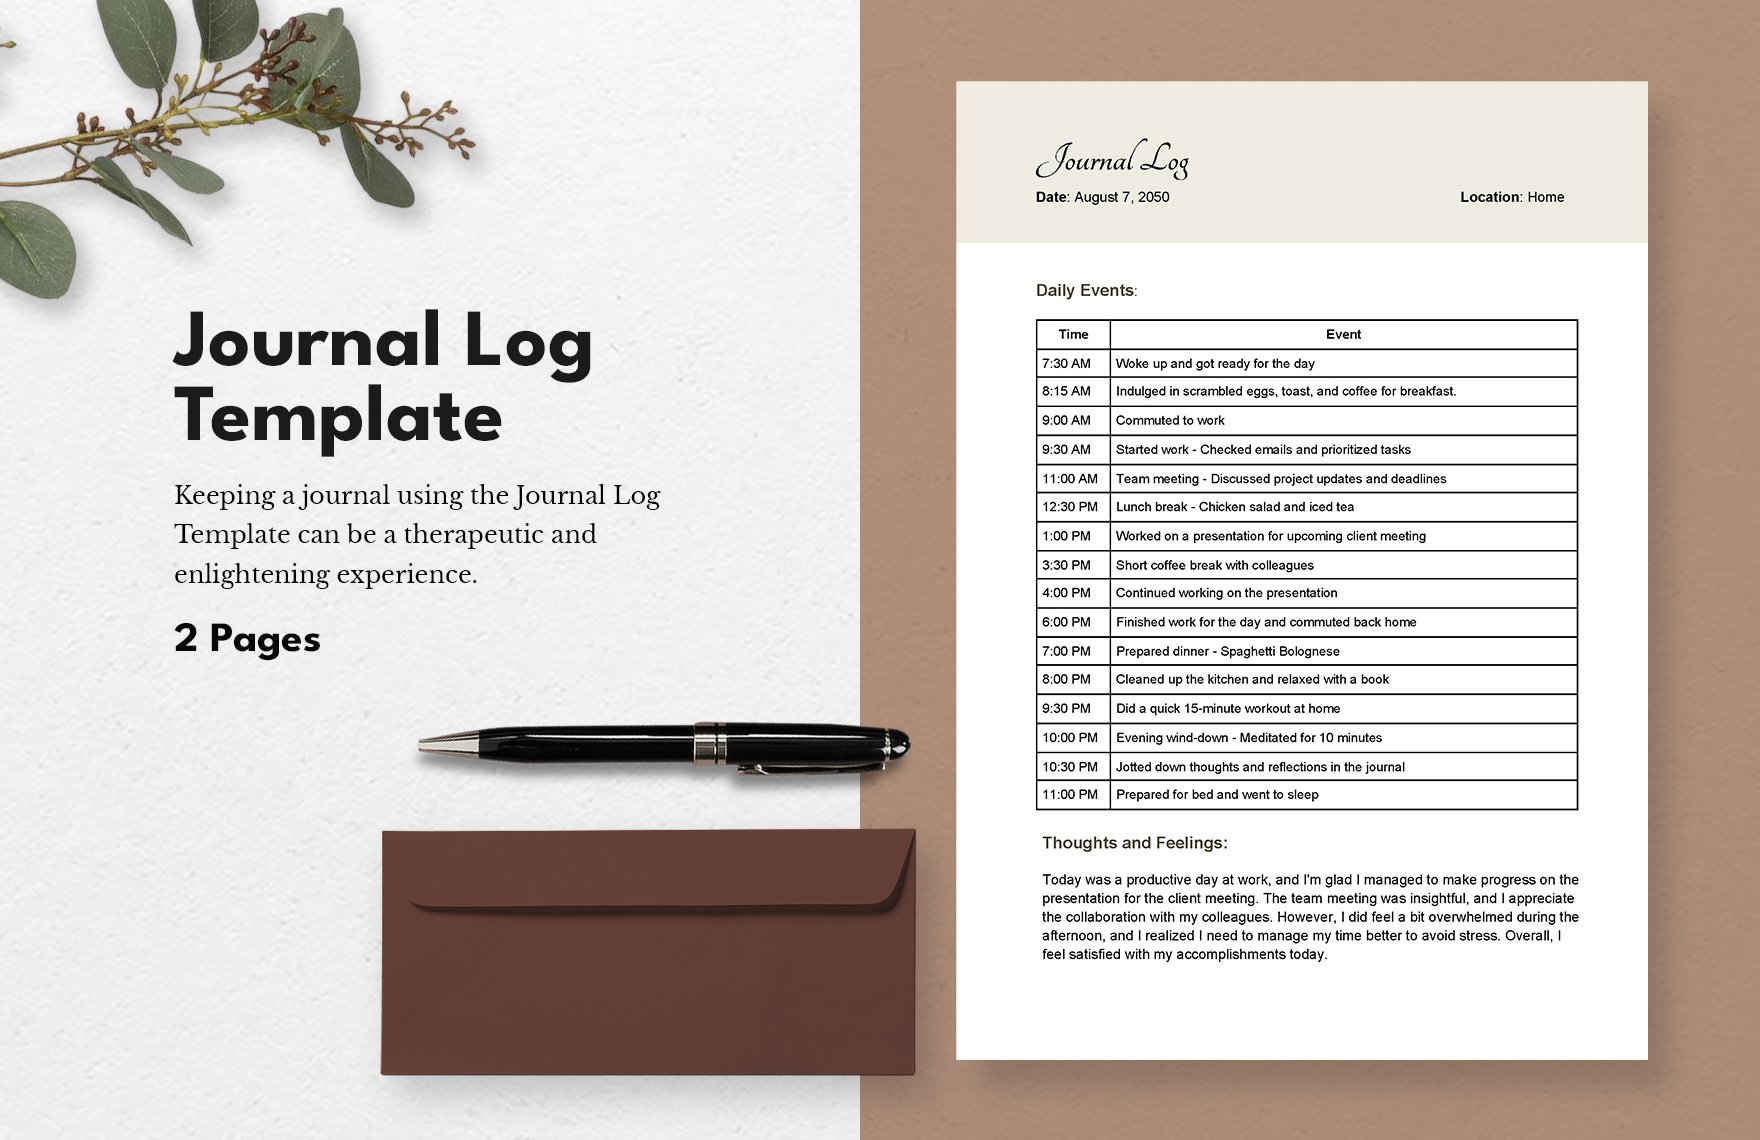 Journal Log Template